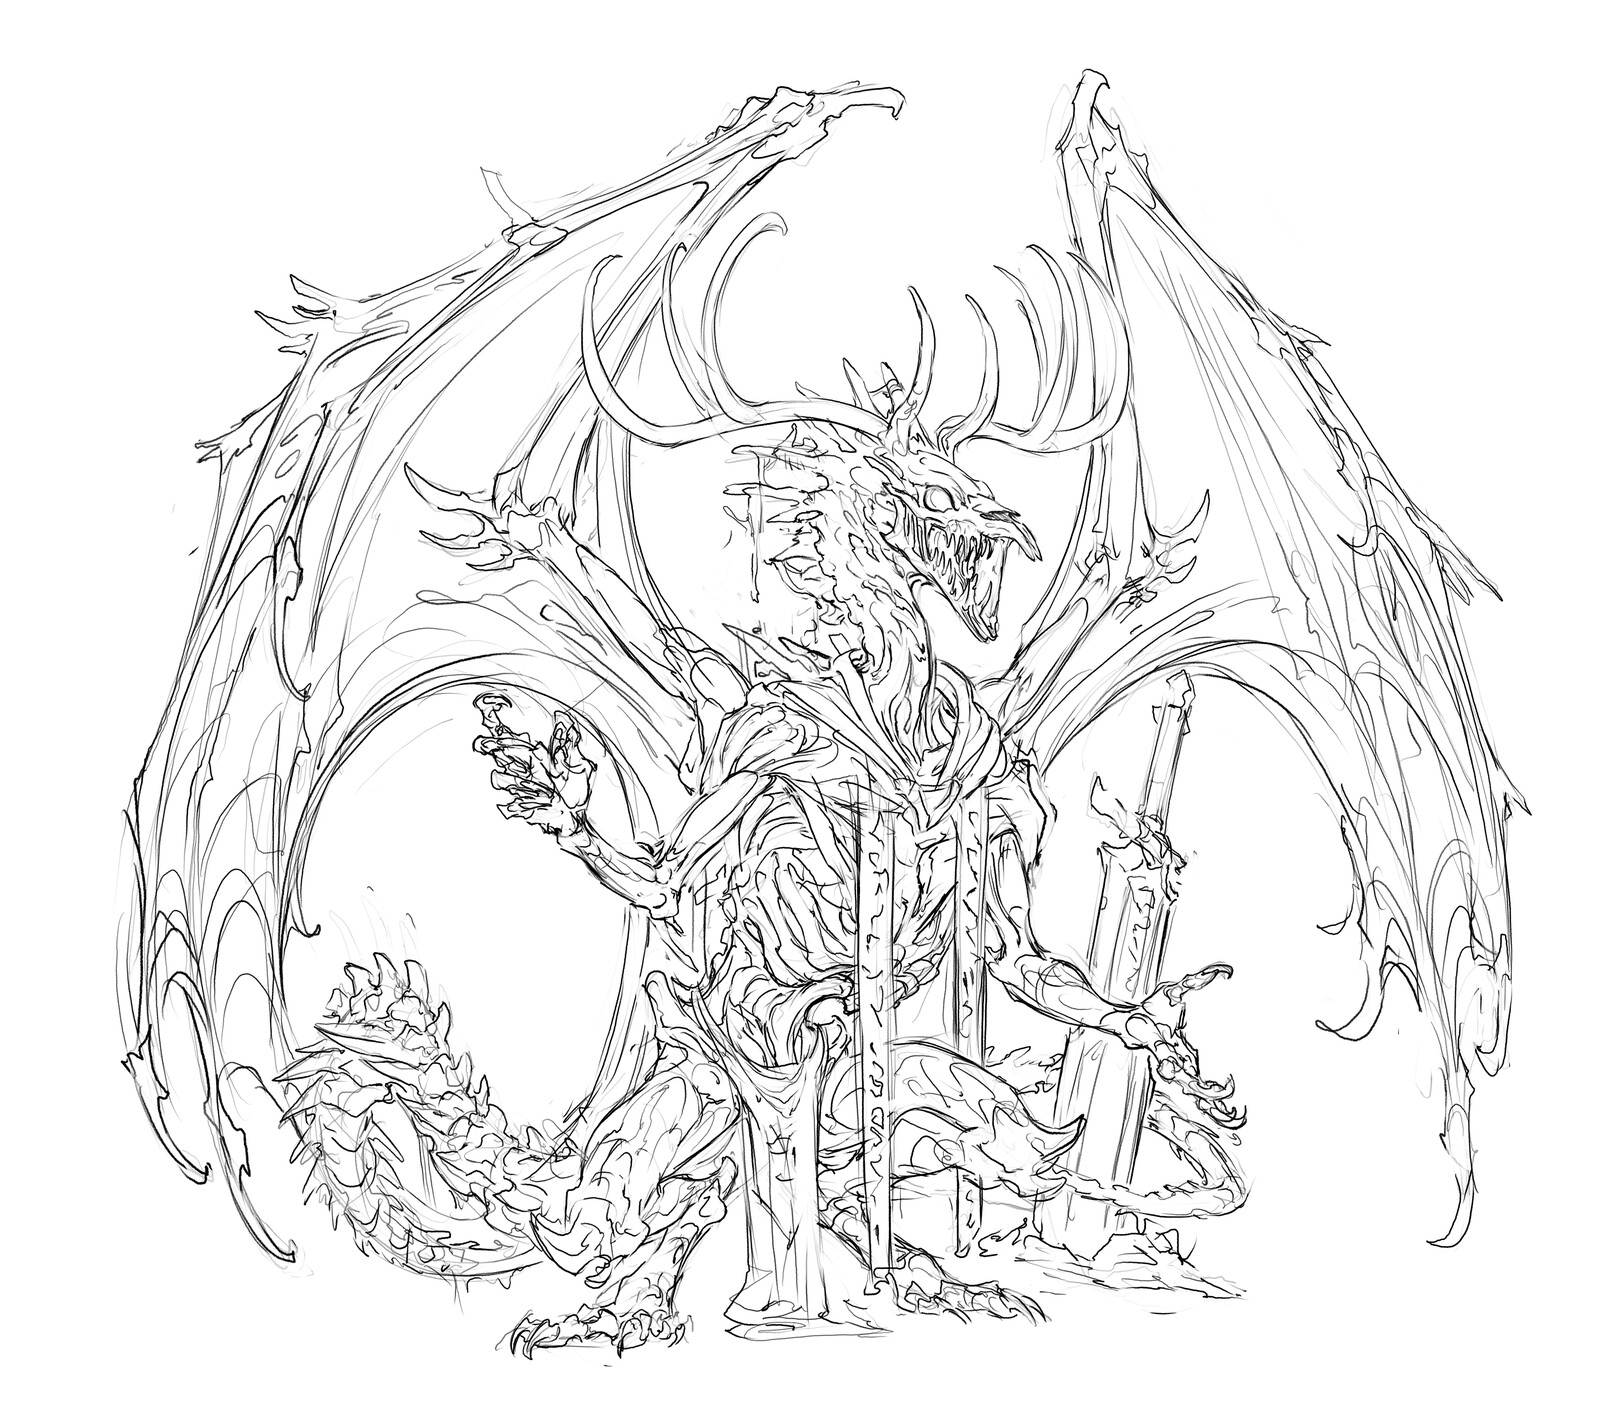 Wraithmarked Creative Concept Sketch - Winter Dragon